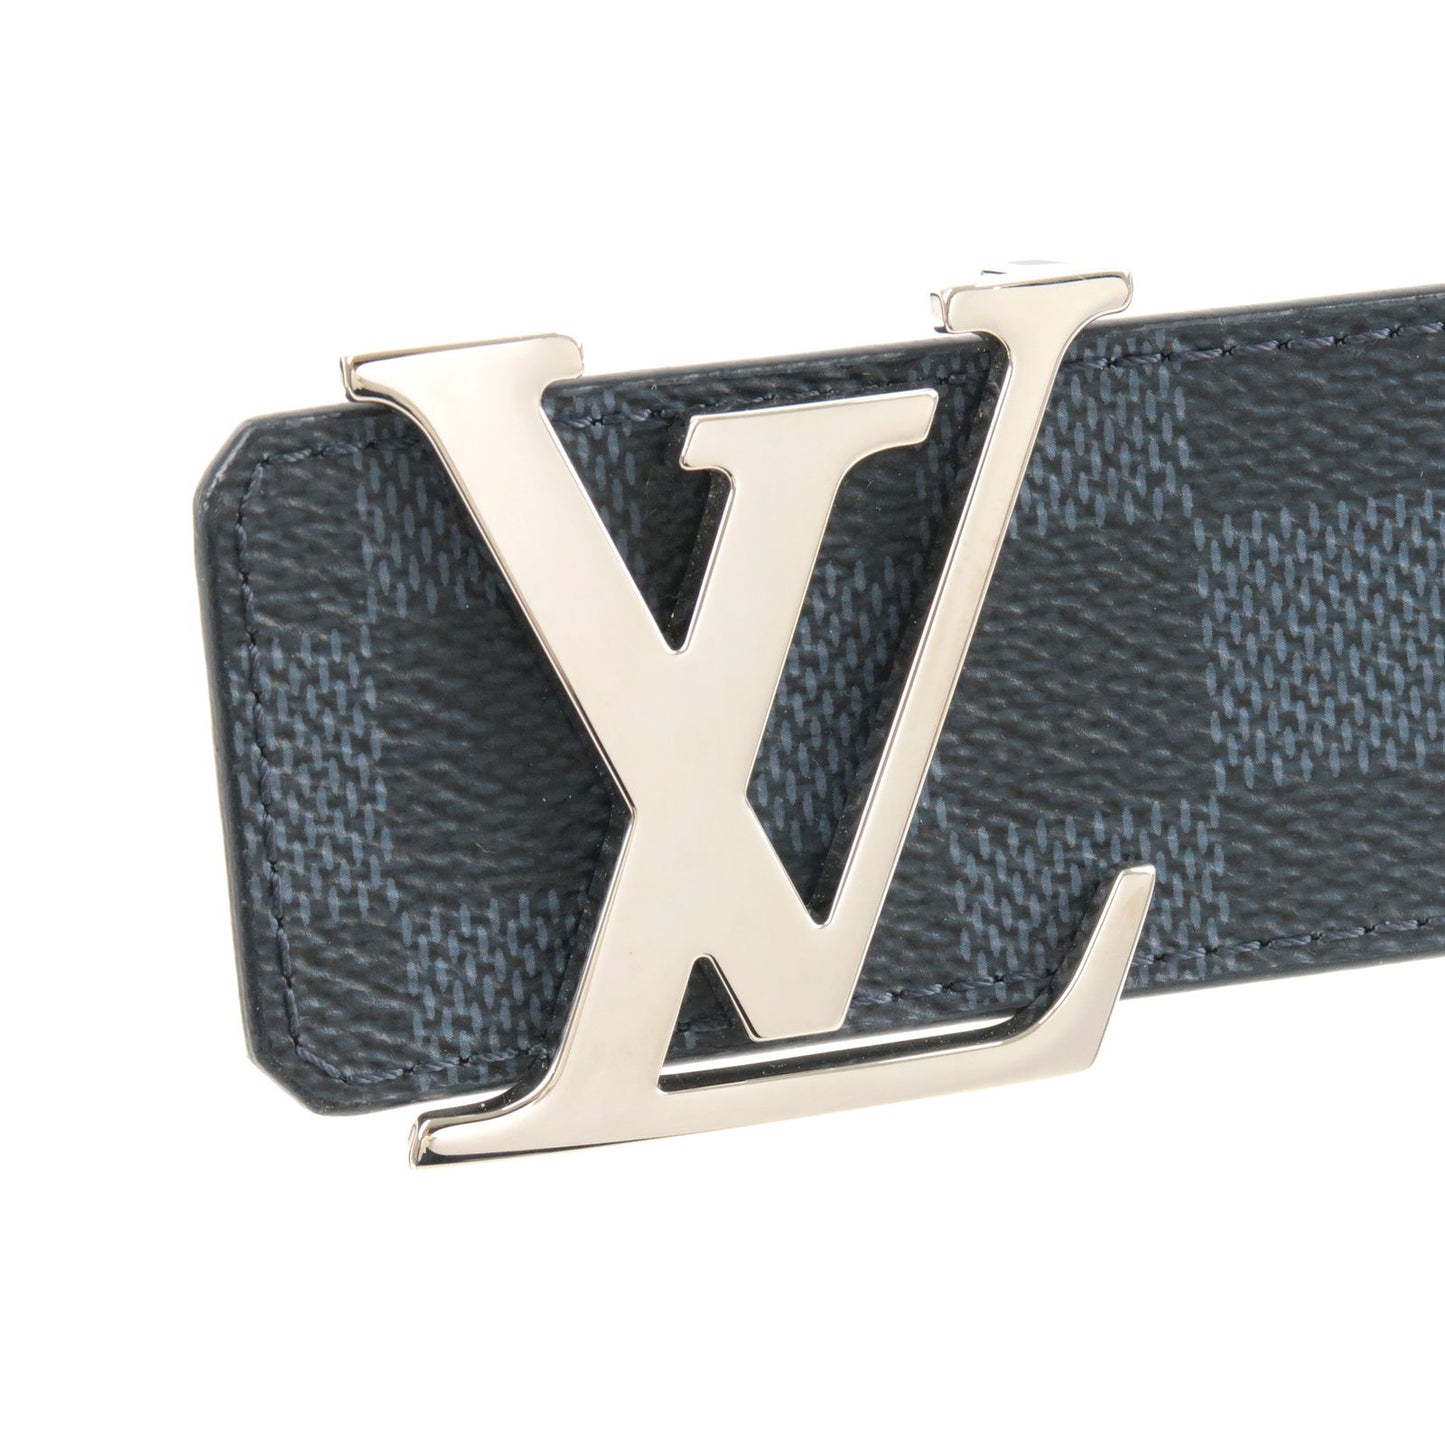 Louis-Vuitton-Damier-Ebene-Saint-Tulle-Carre-Belt-90/36-M6944 –  dct-ep_vintage luxury Store